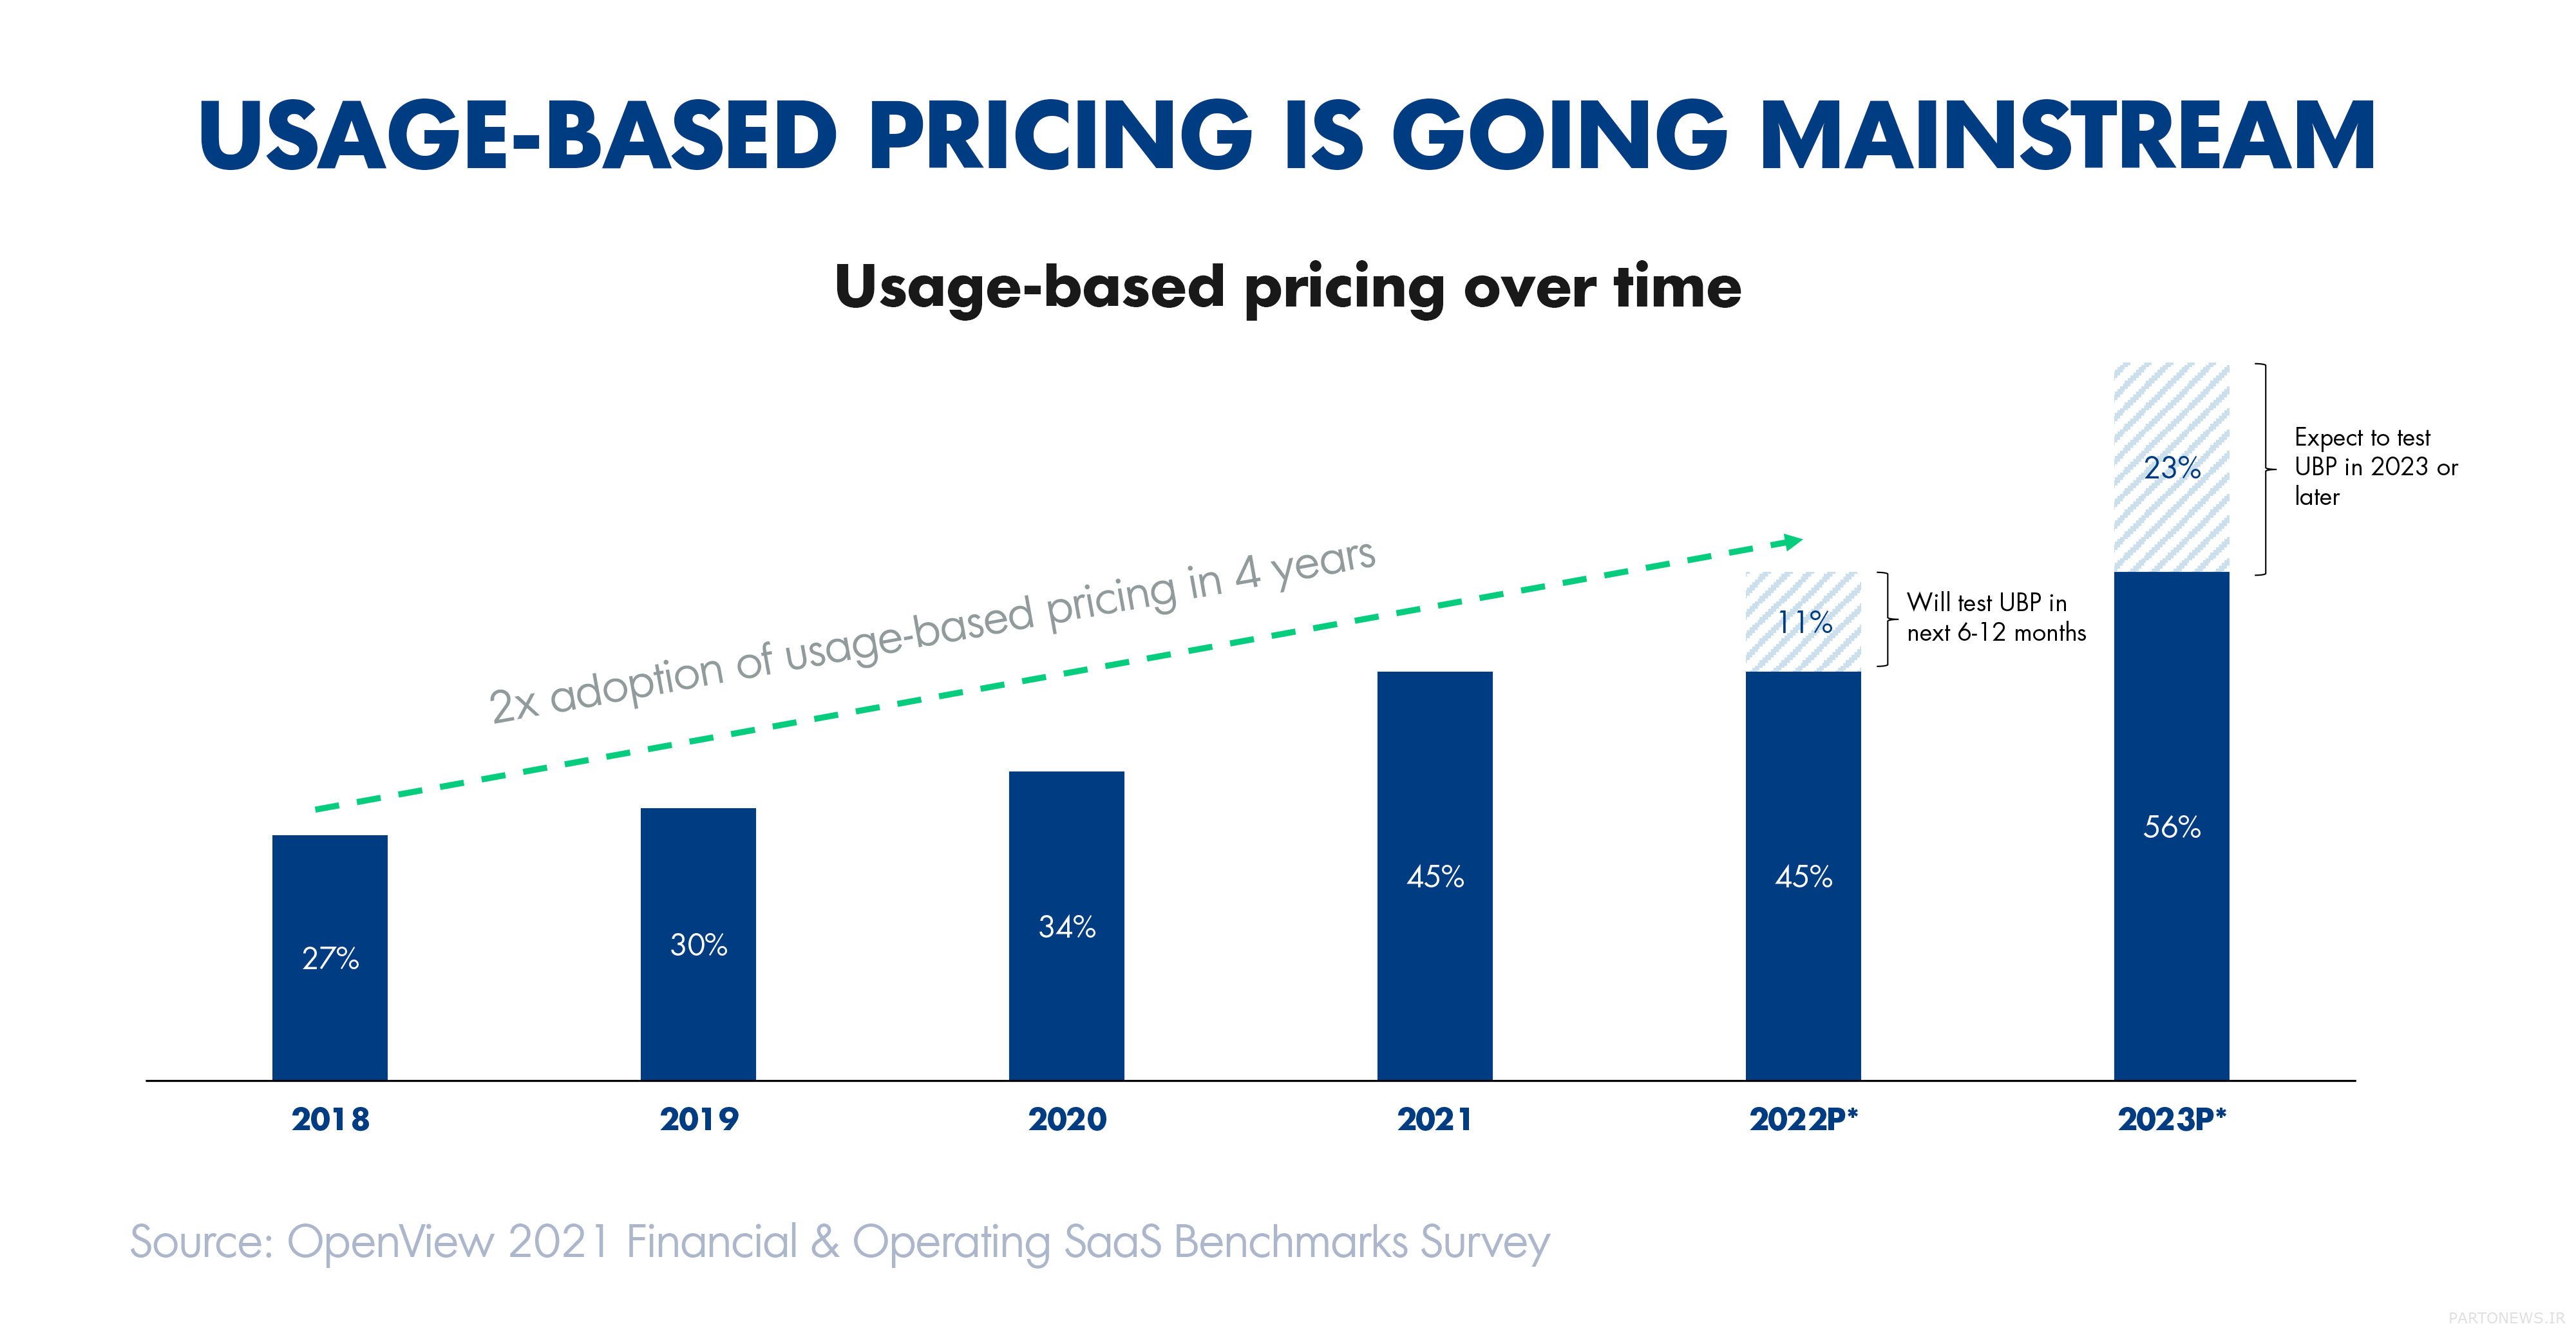 نمودار افزایش پذیرش قیمت گذاری مبتنی بر استفاده در سال های 2018-2023 را نشان می دهد